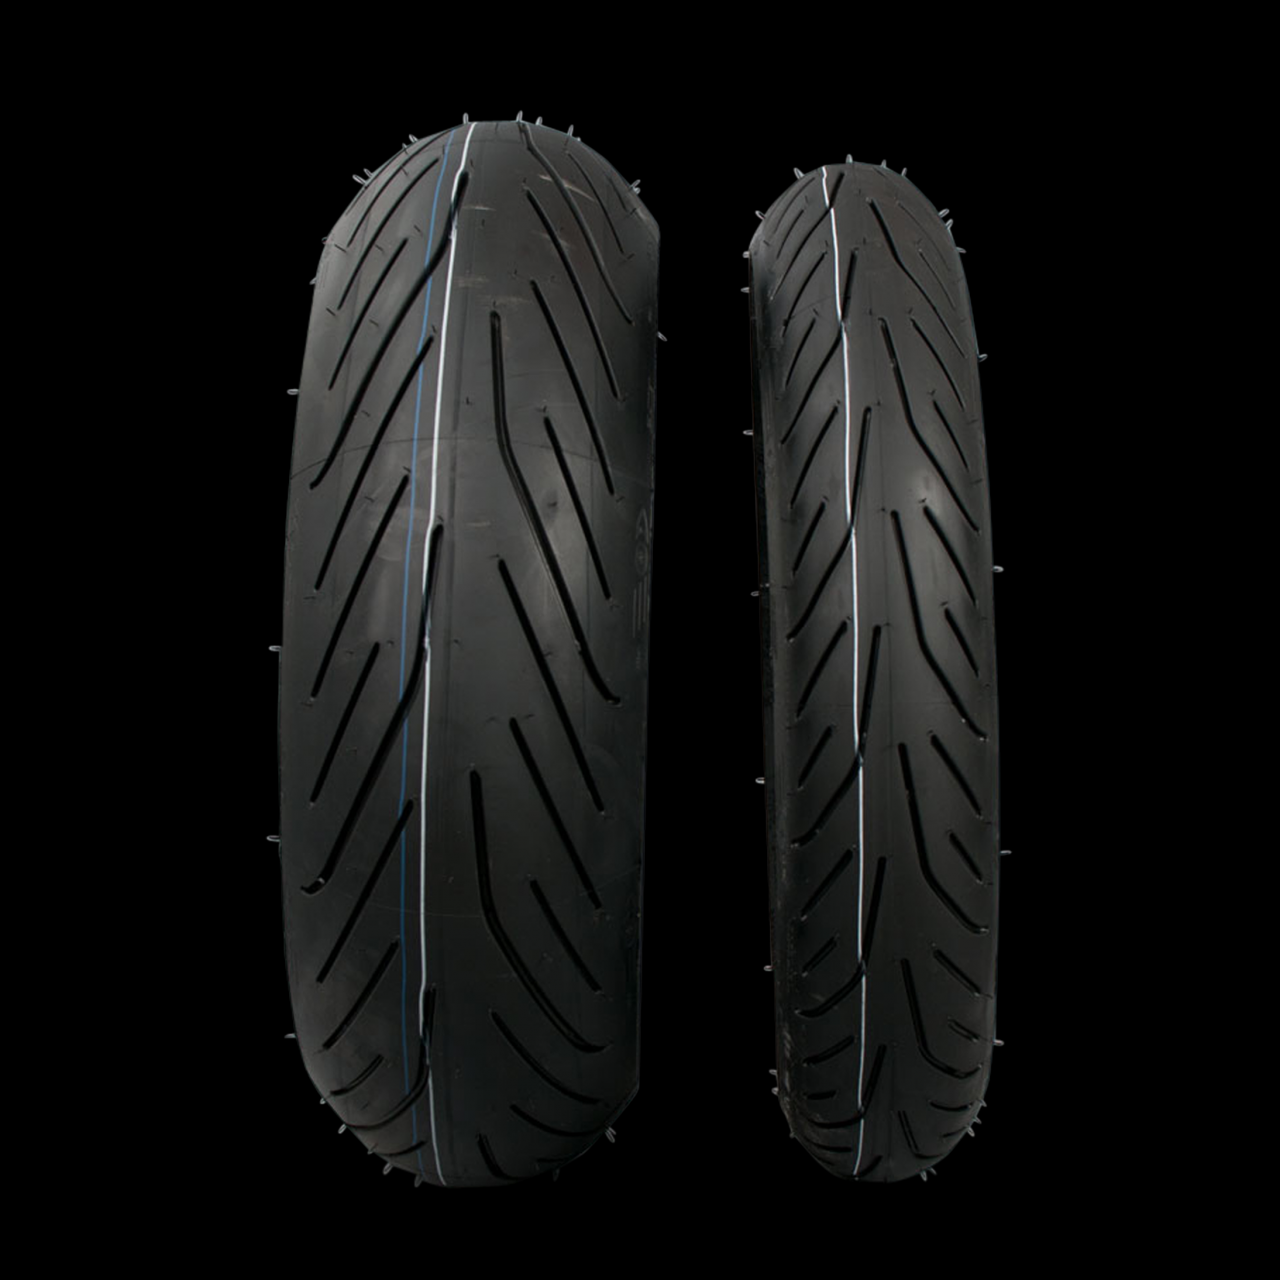 Buy Michelin Pilot Power 3 180/55-17 Sport Bike Radial High Speed  Motorcycle Tire (180/55ZR17 Rear) Online in Taiwan. B083C2N1VS